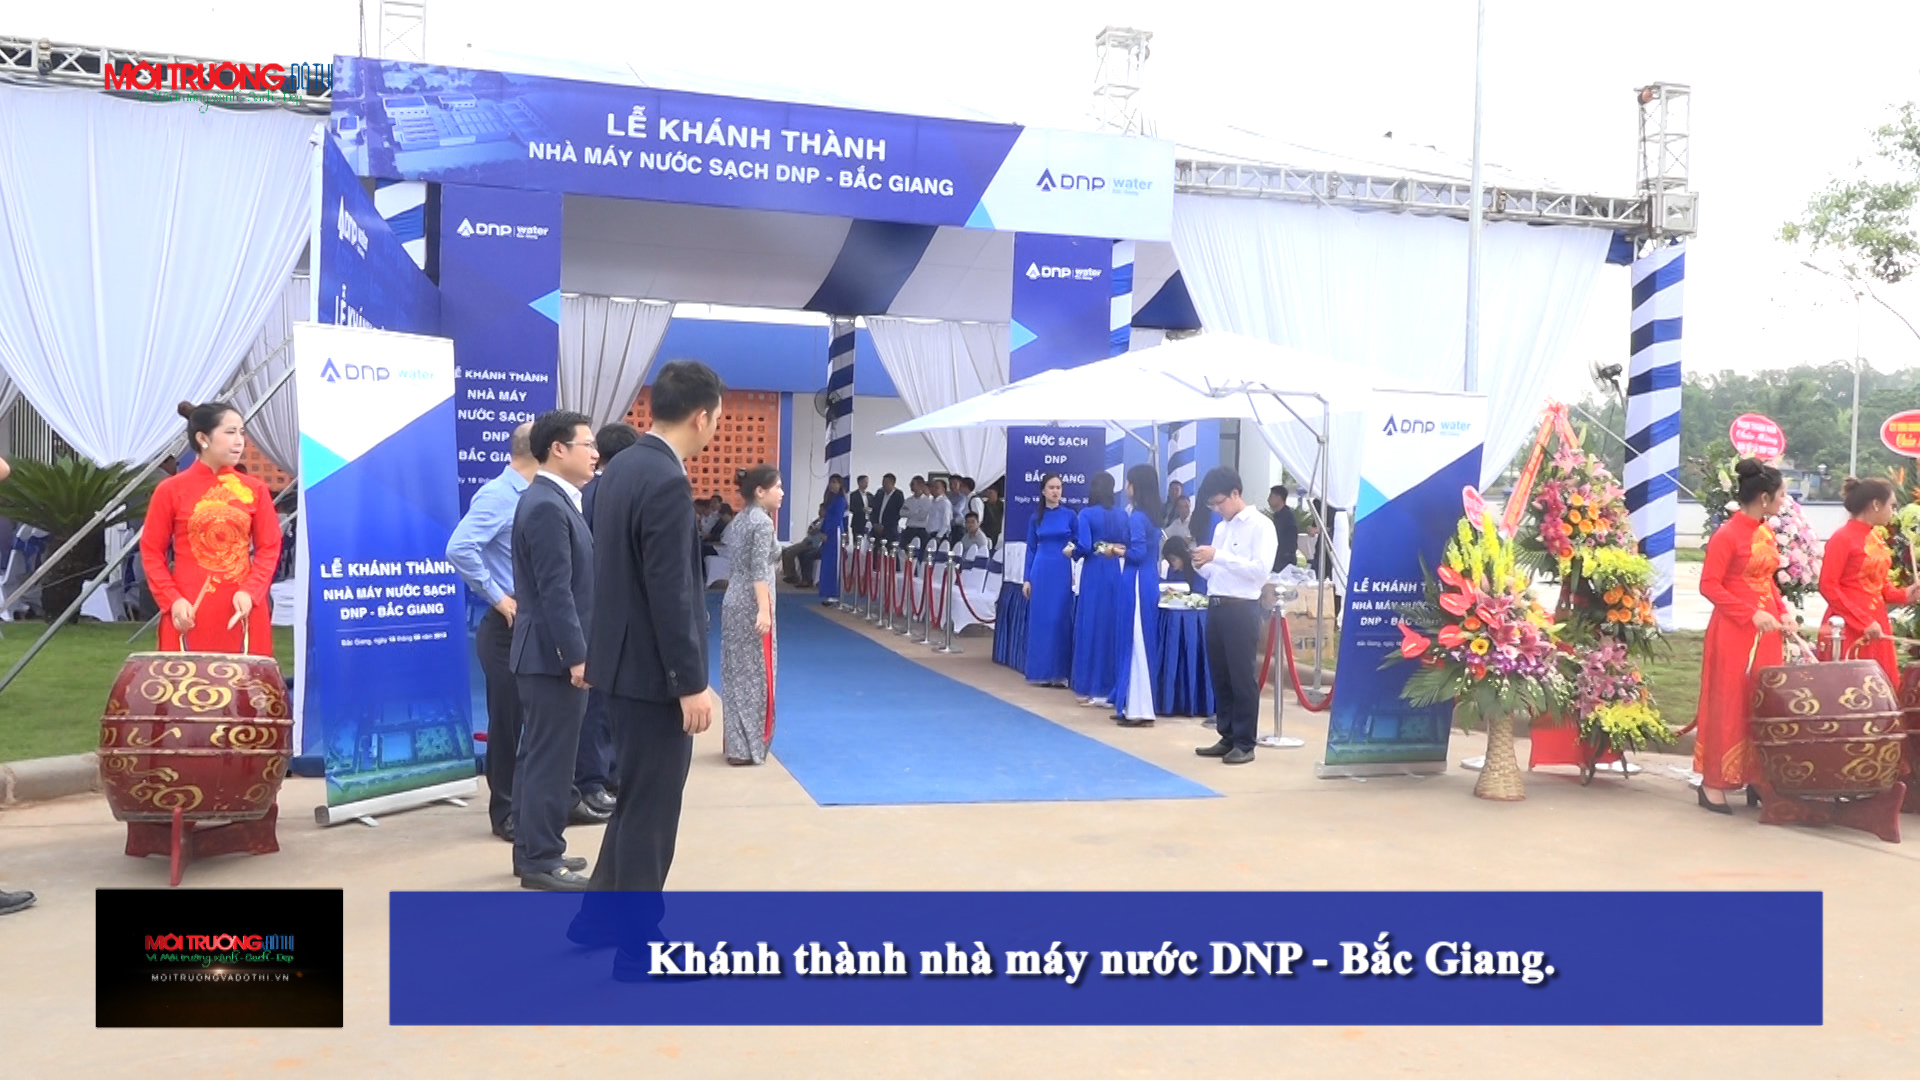 [Video] Lễ khánh thành nhà máy nước DNP - Bắc Giang